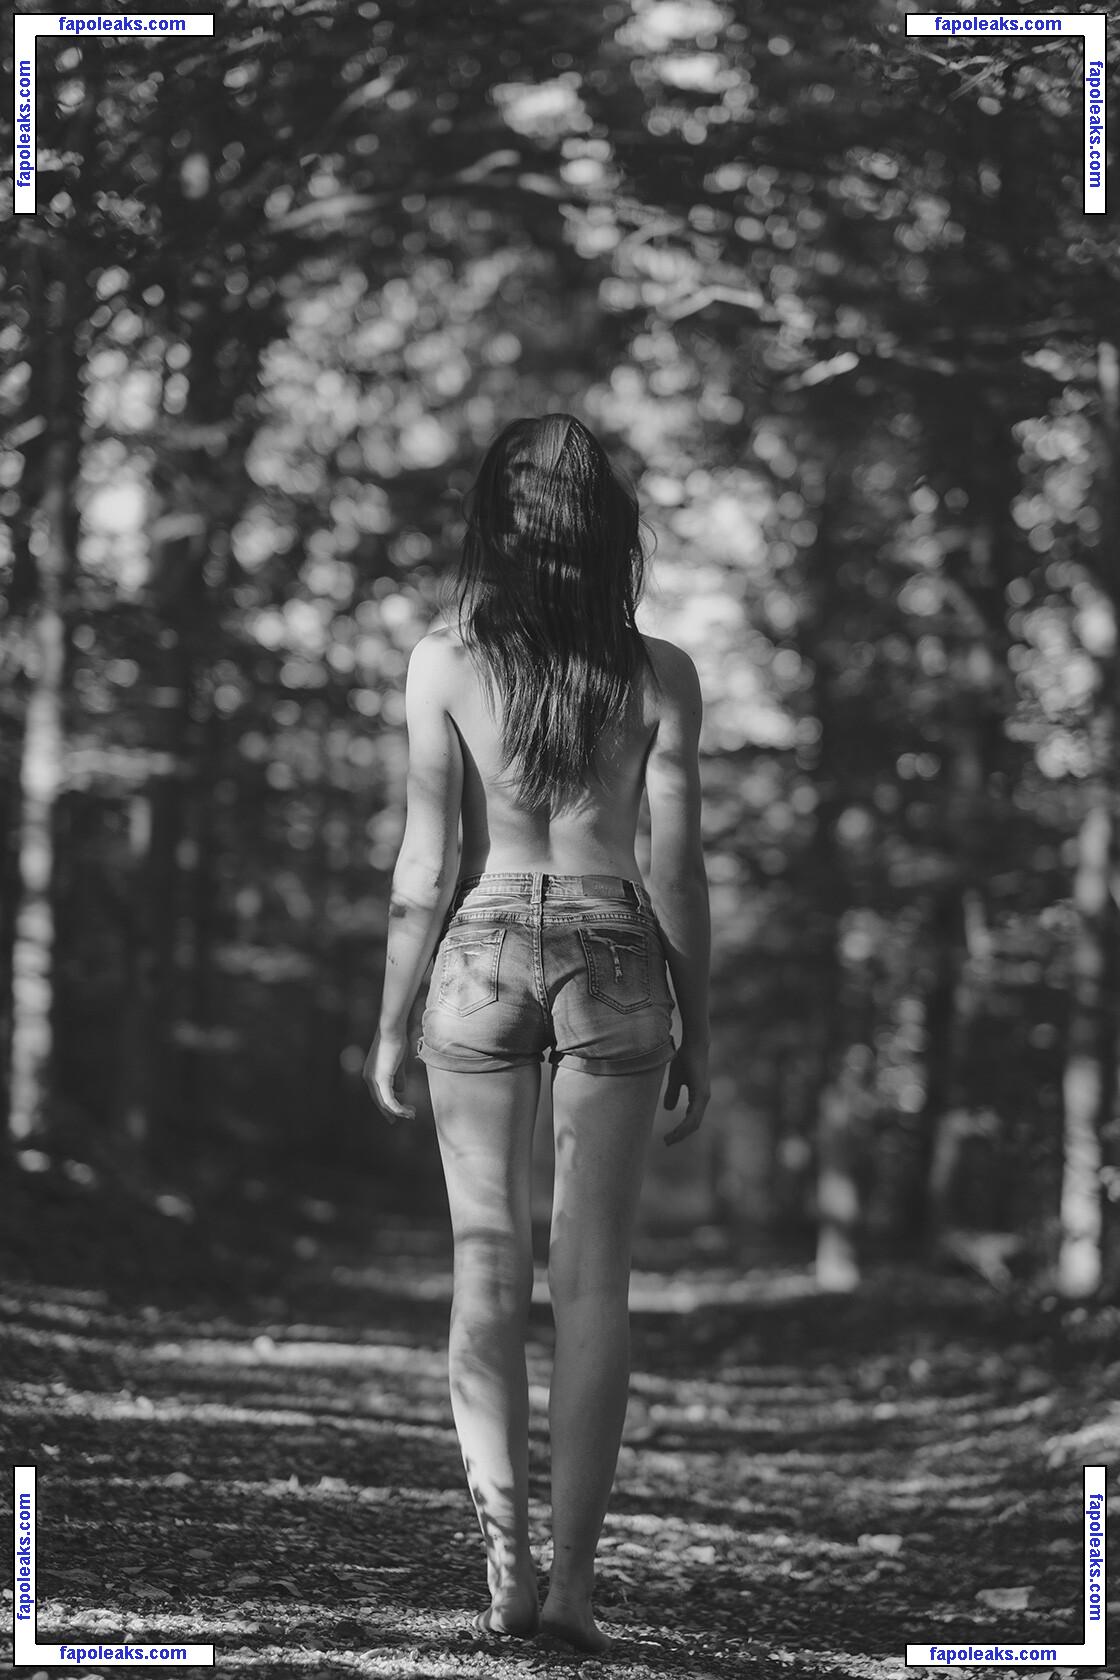 Chloe Bonhaure / chloebonhaure / chloewildd nude photo #0005 from OnlyFans